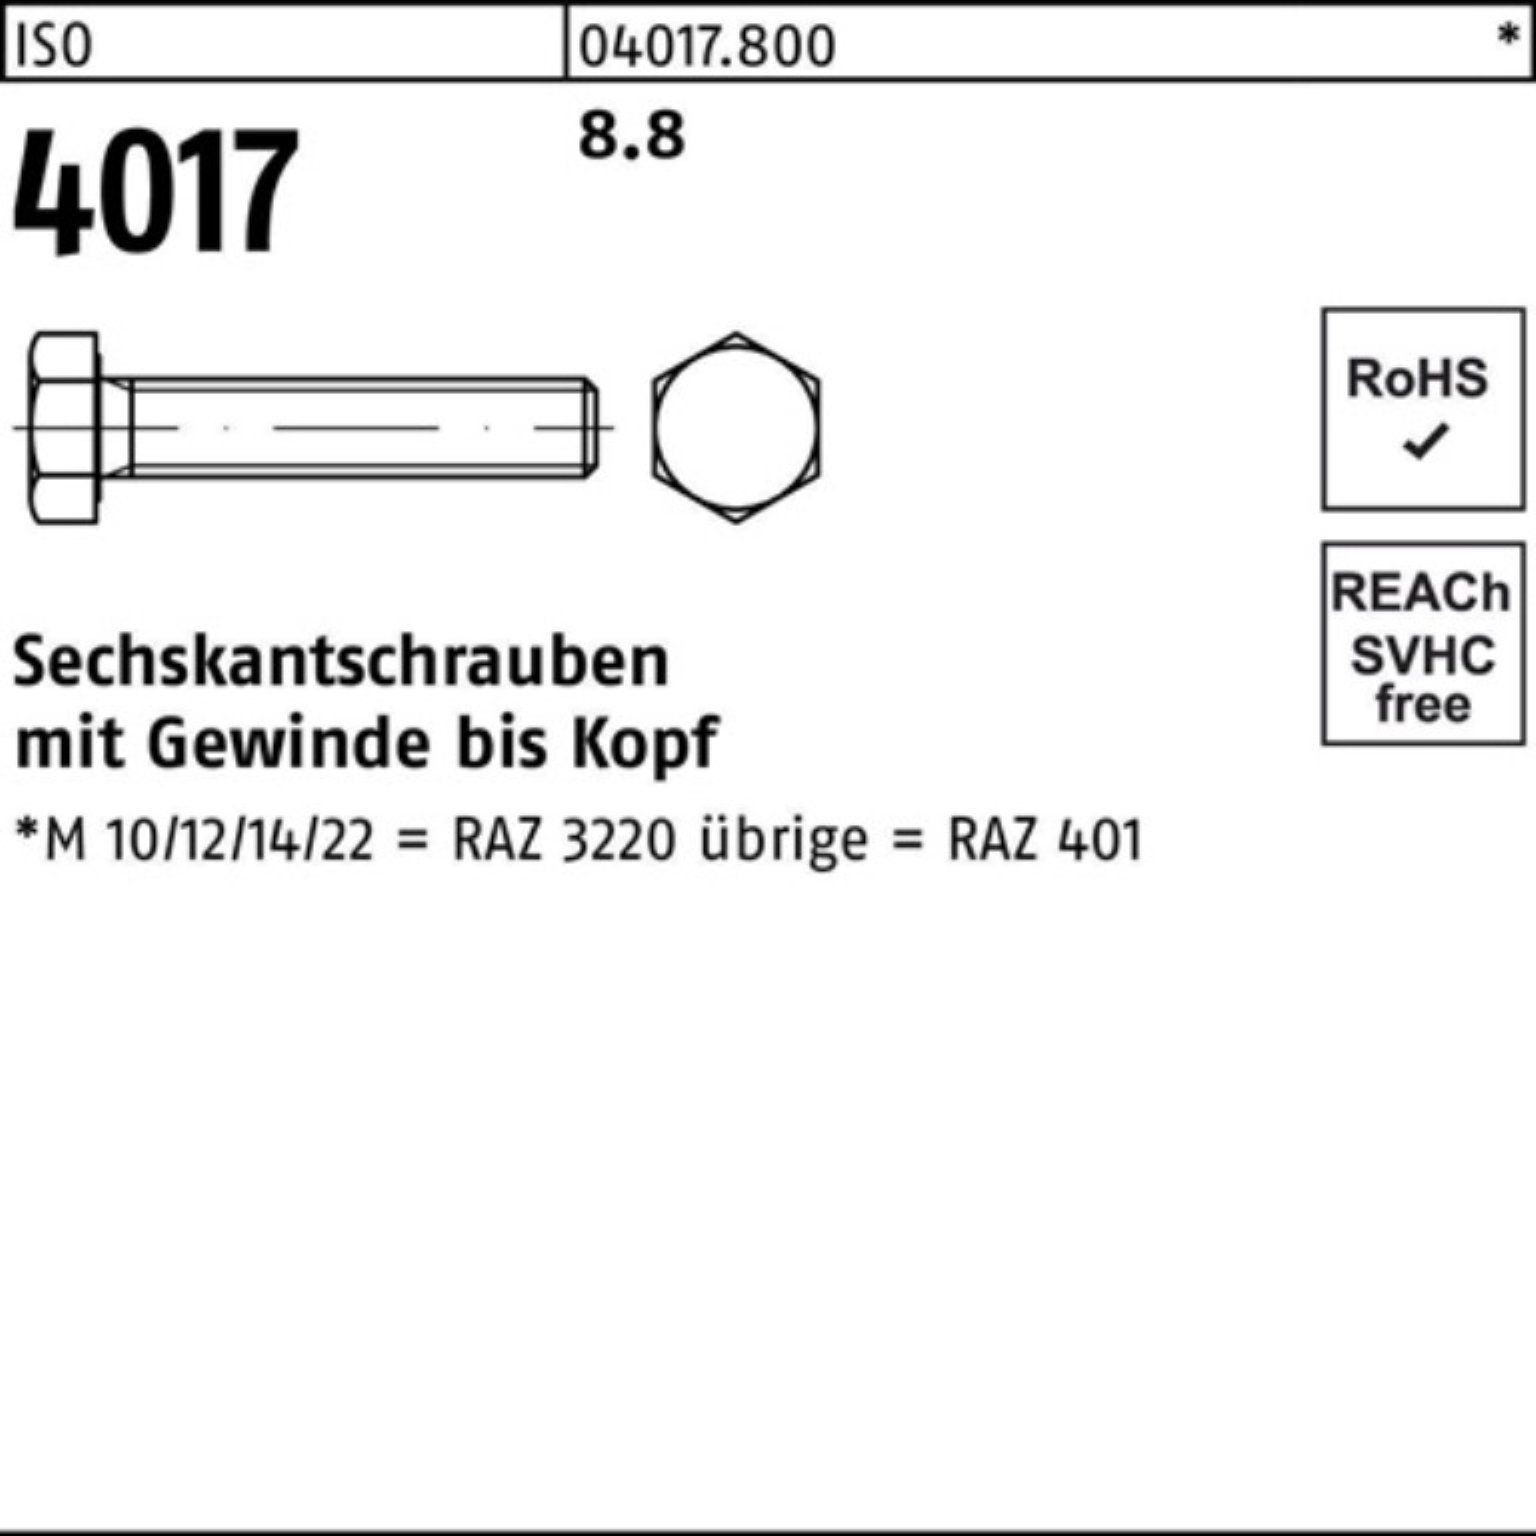 Pack VG ISO Bufab 100er 1 Sechskantschraube 8.8 Sechskantschraube M36x Stück 4017 ISO 4017 40